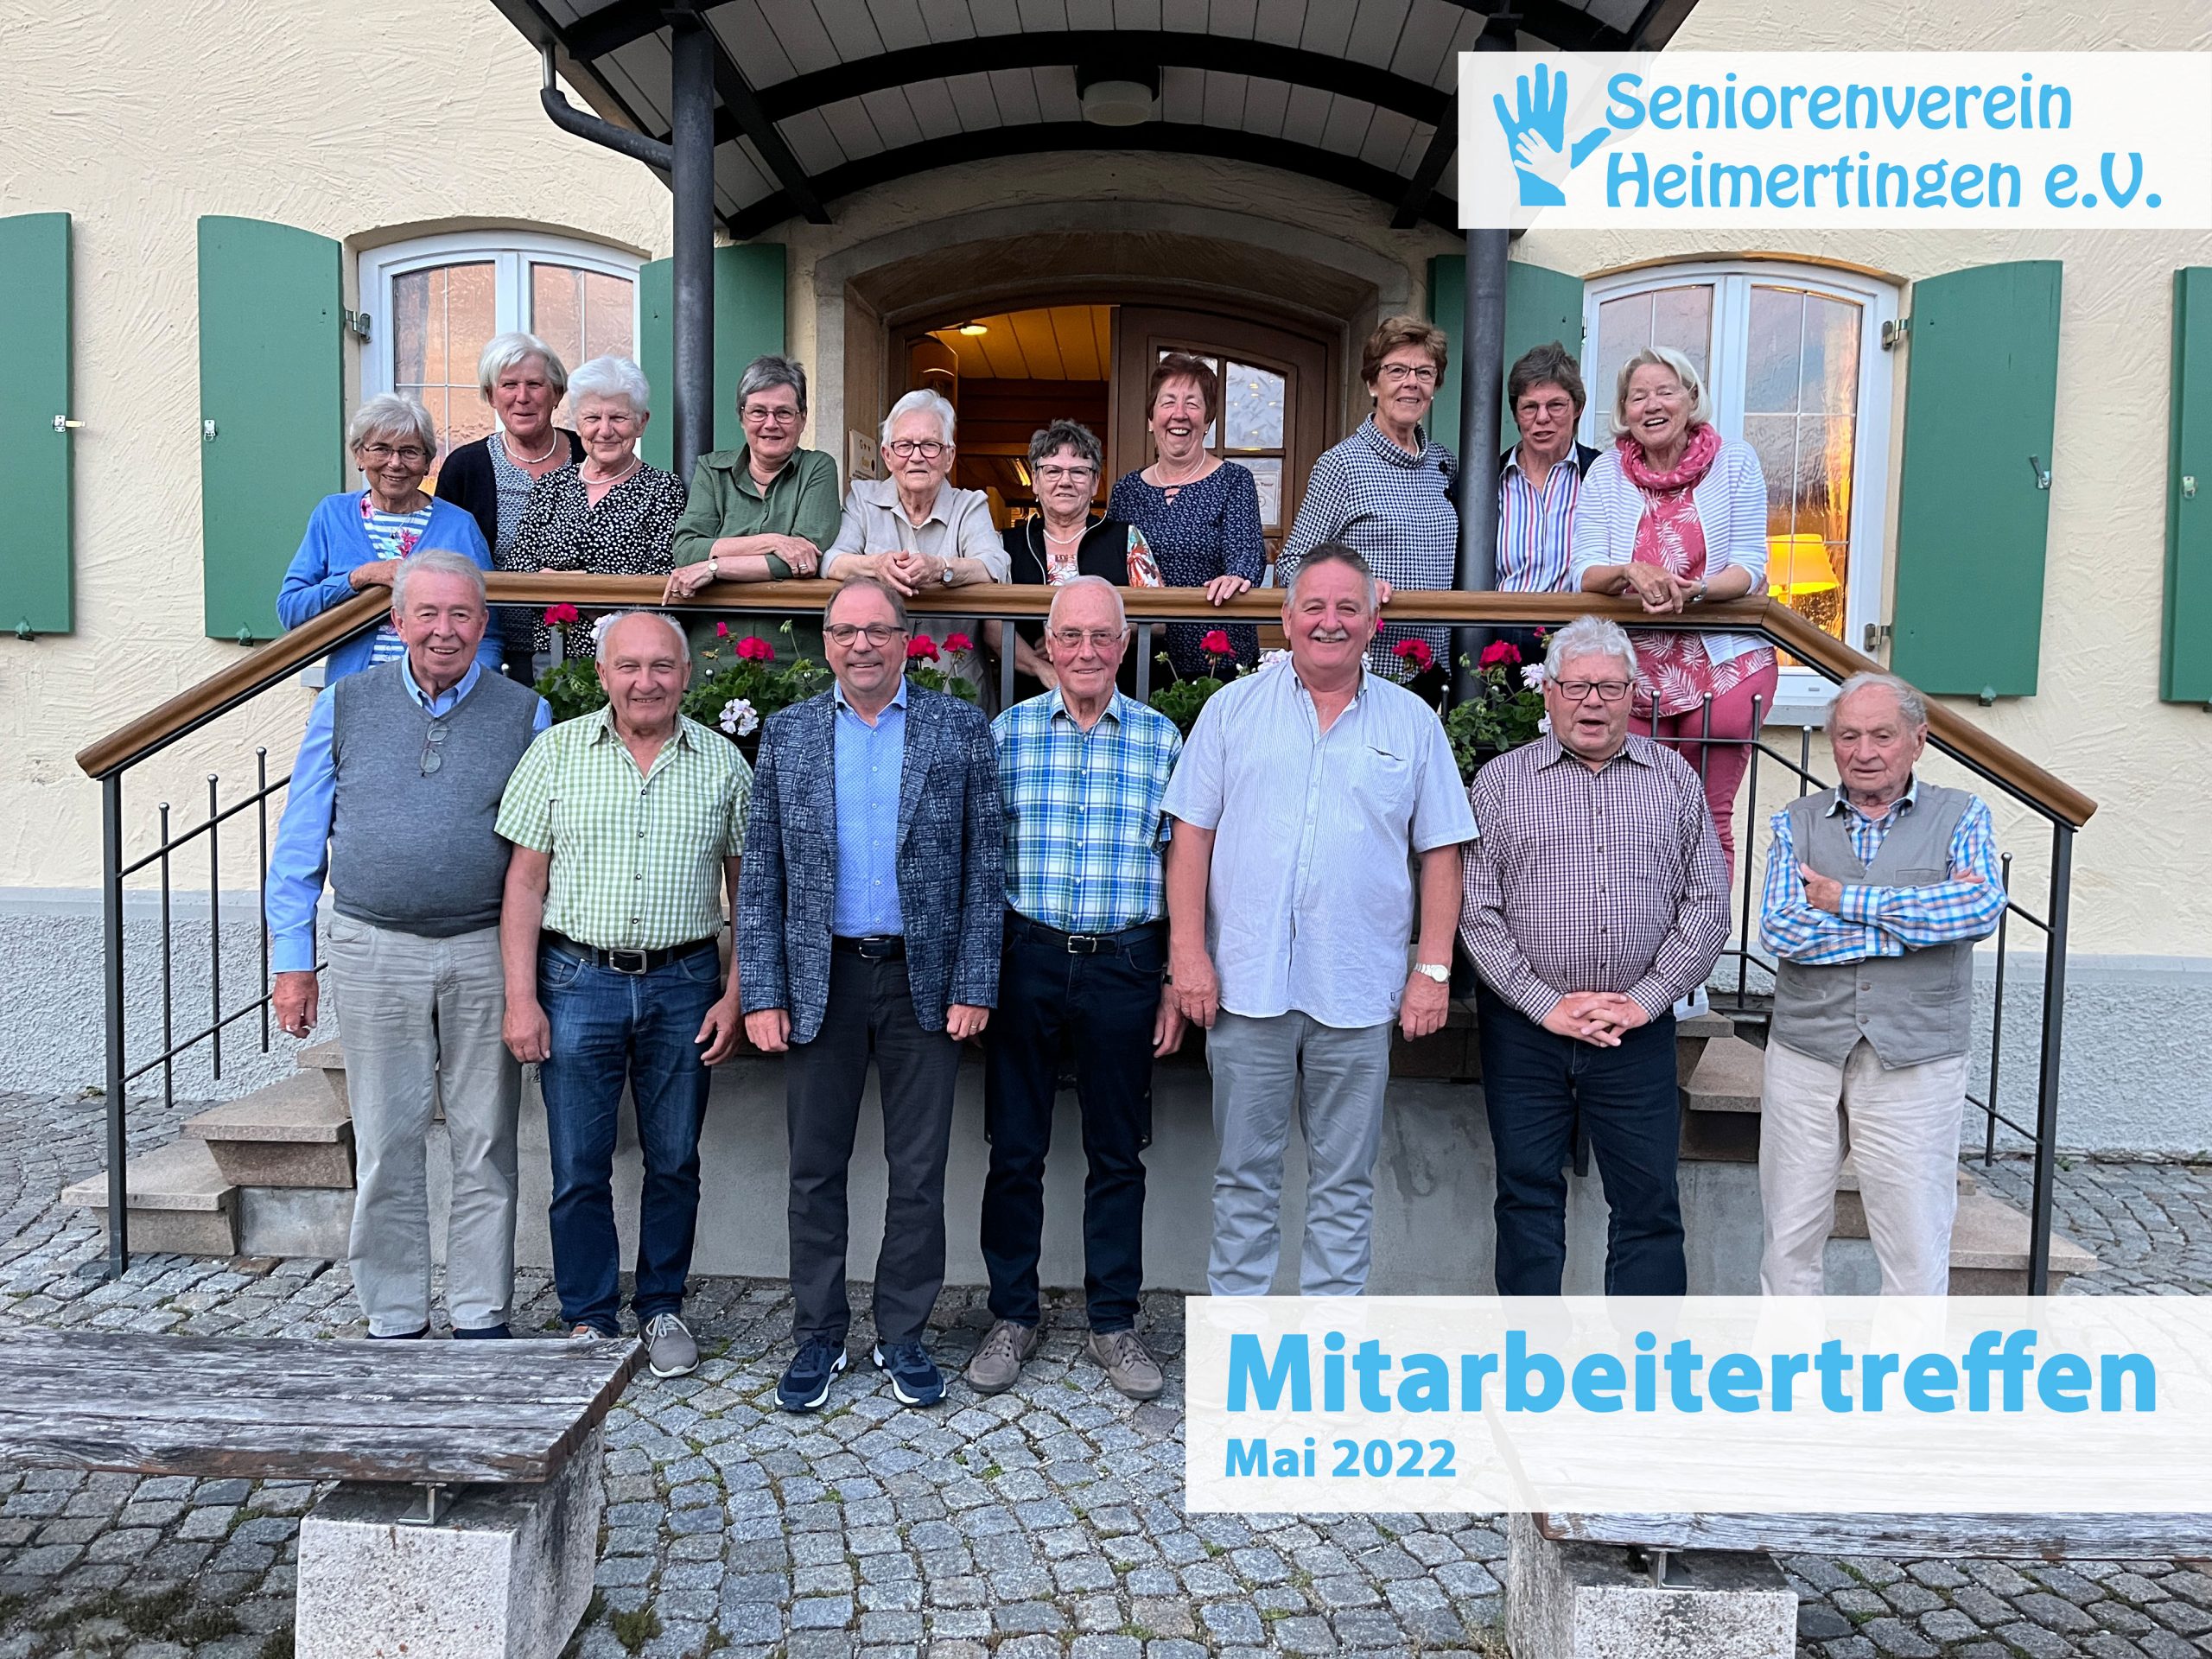 Mitarbeitertreffen 2022 Seniorenverein Heimertingen